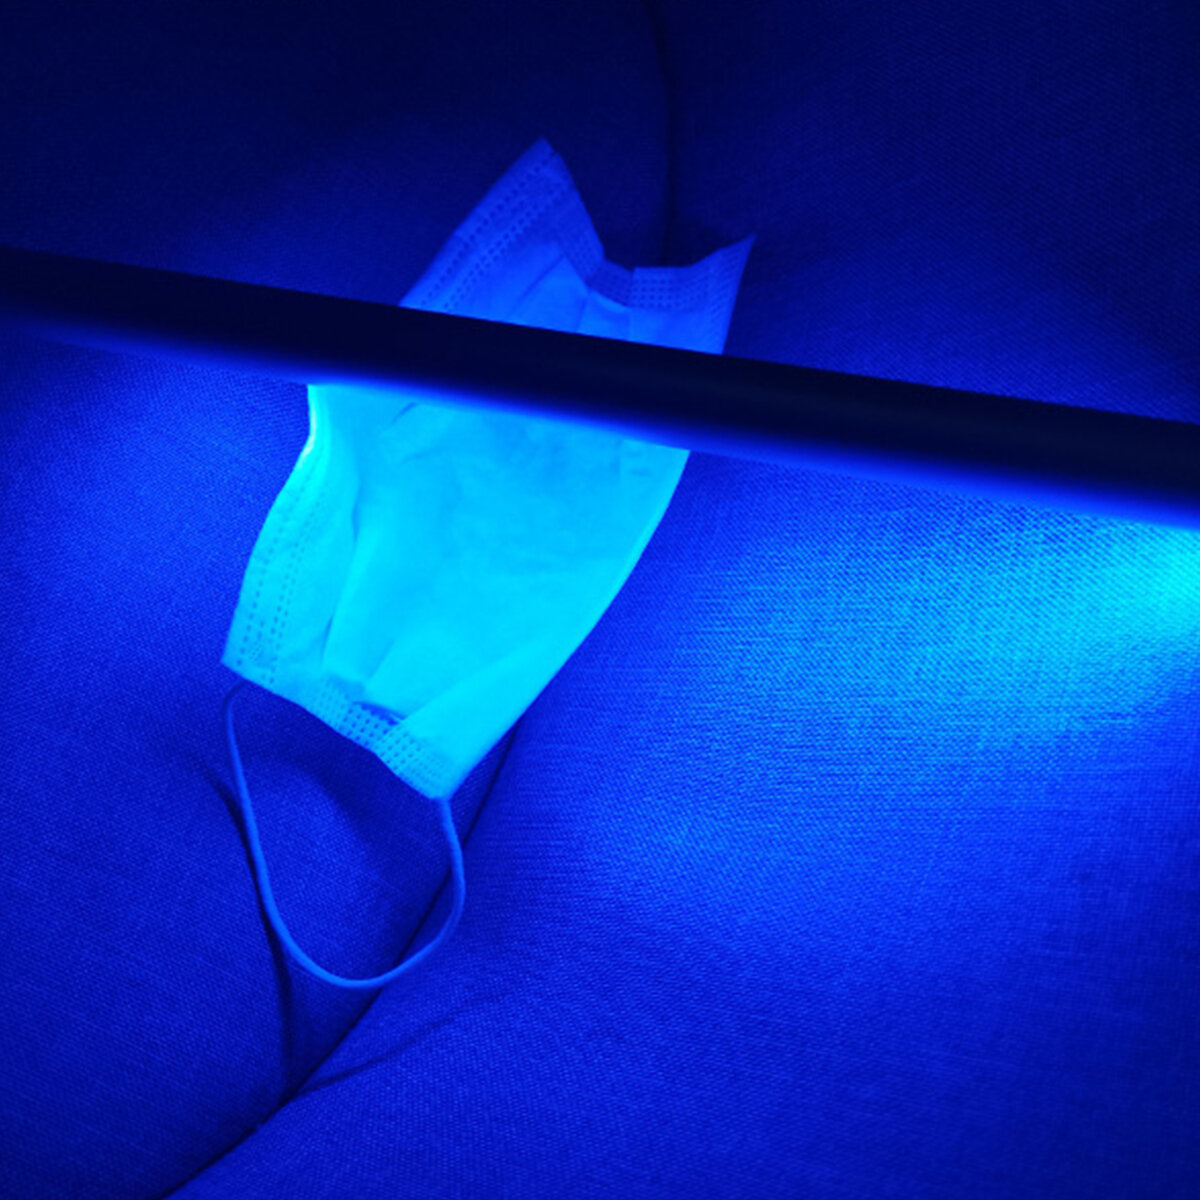 Handheld Ultraviolet Sterilization Rod Portable UV Lamp USB Charging LED Cabinet Light for Home Kitchen